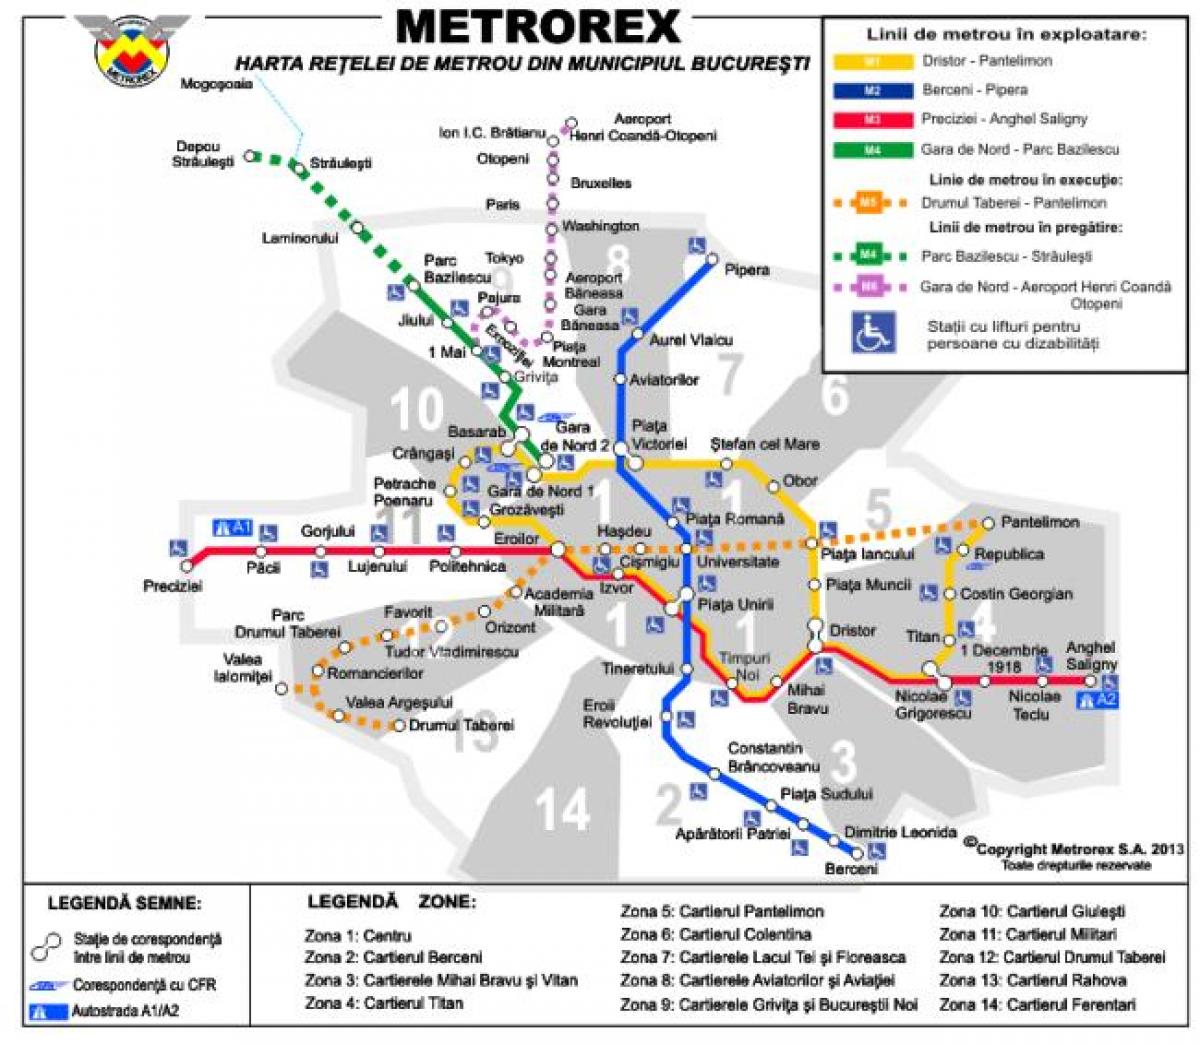 布加勒斯特的地铁图